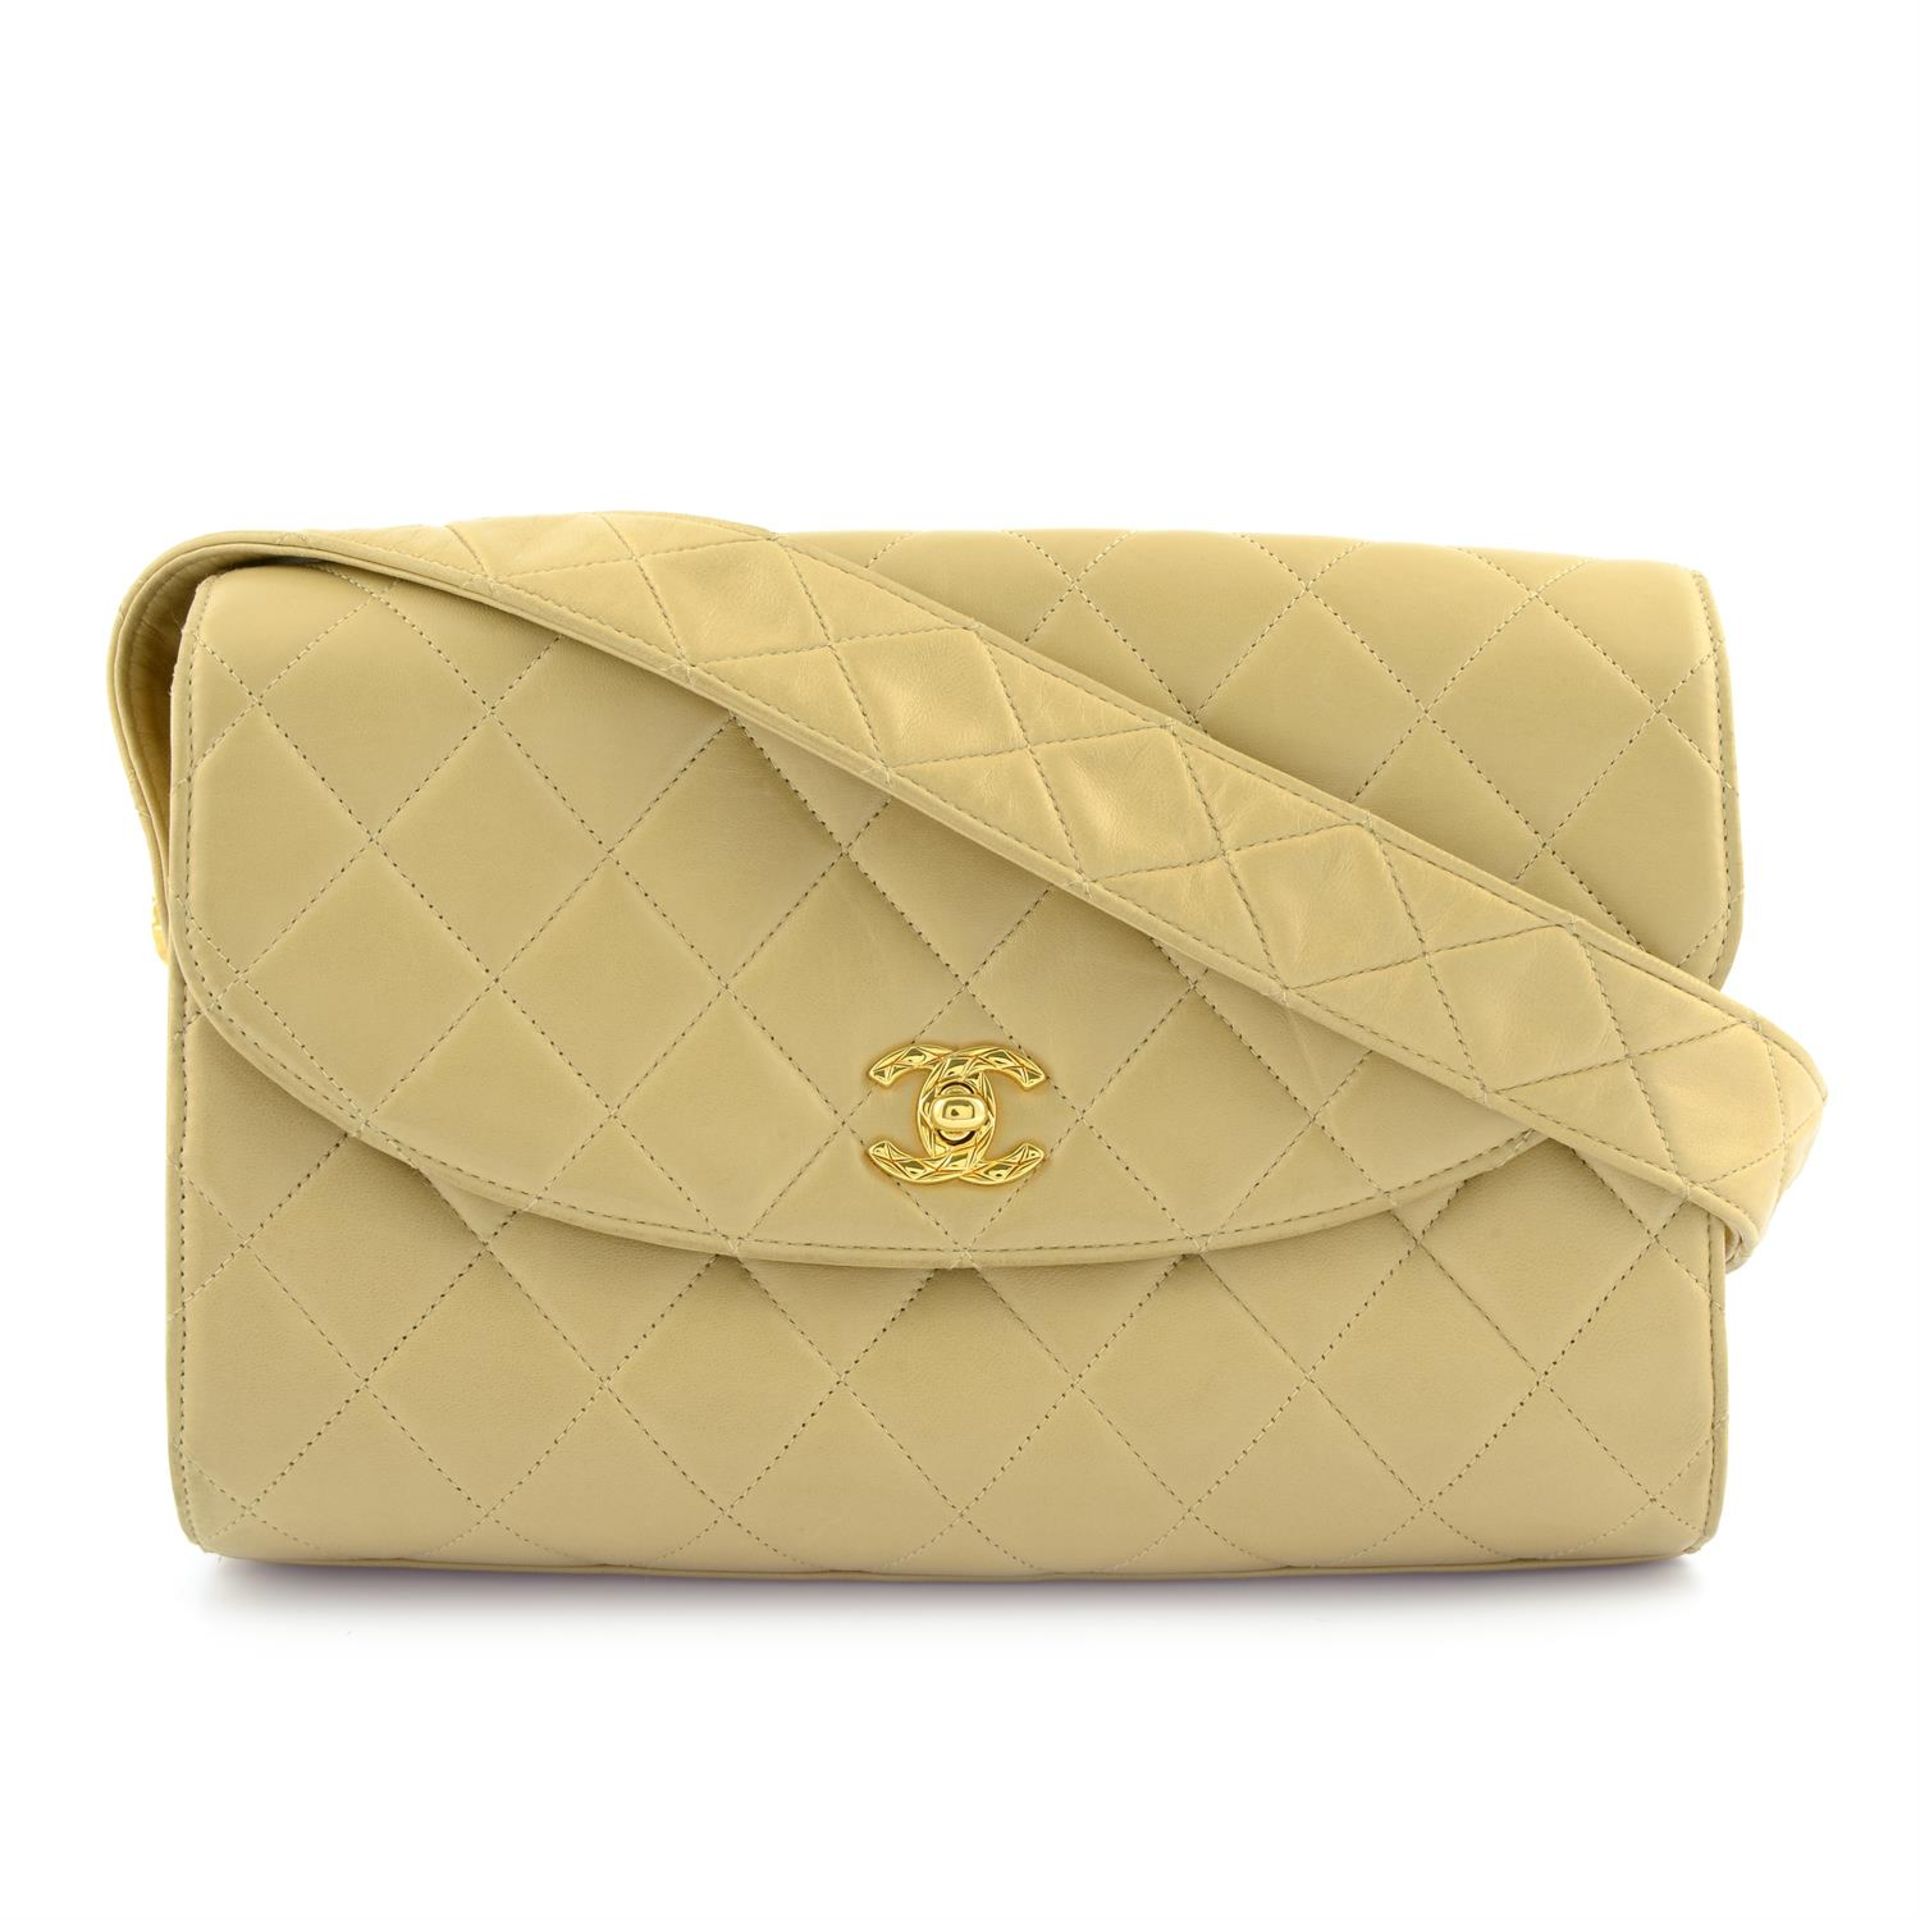 CHANEL - a beige lambskin leather handbag.